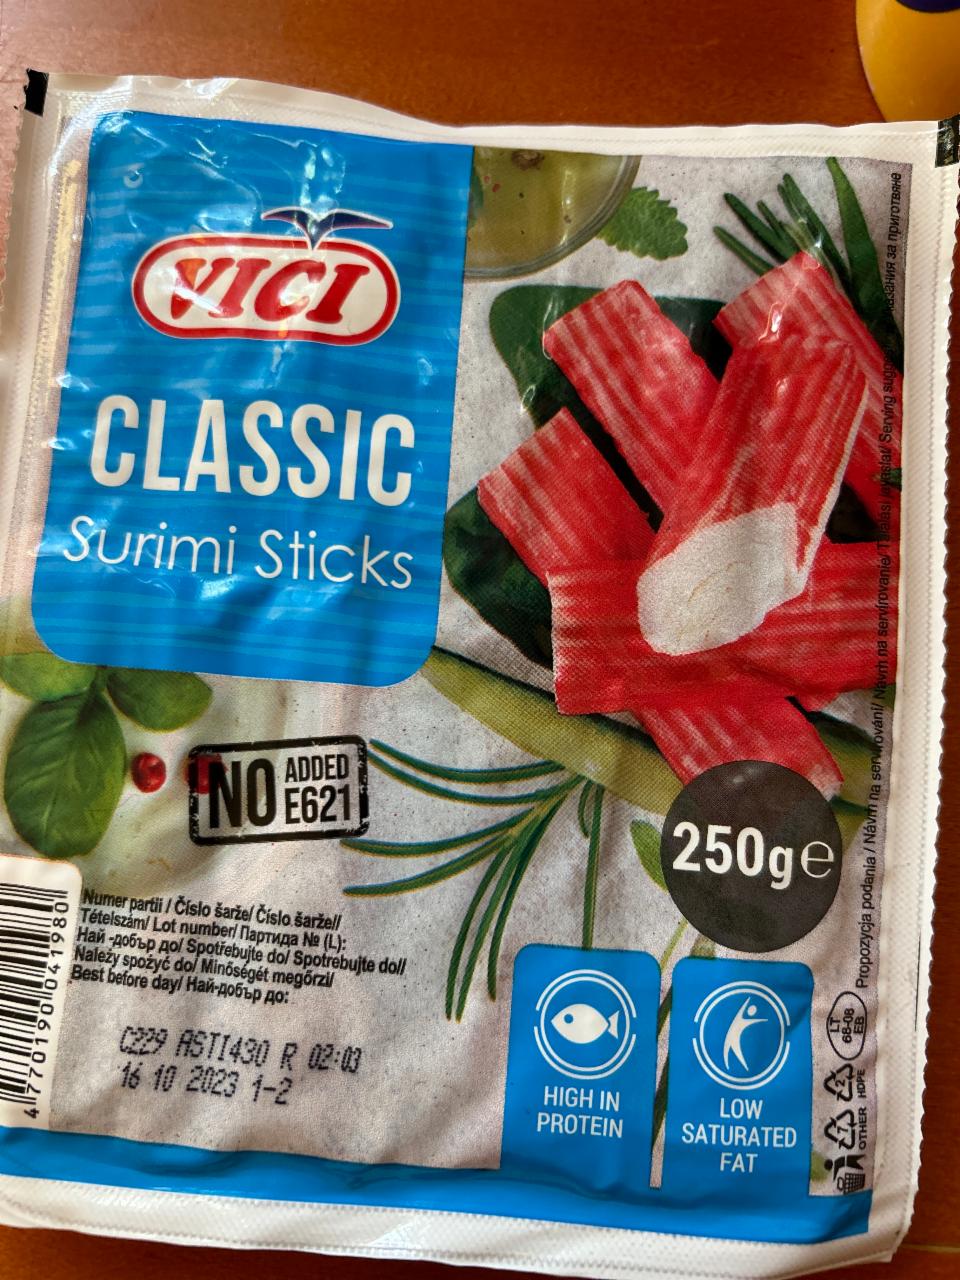 Képek - Vici Classic hűtött, surimi rák ízű halrúd 250 g